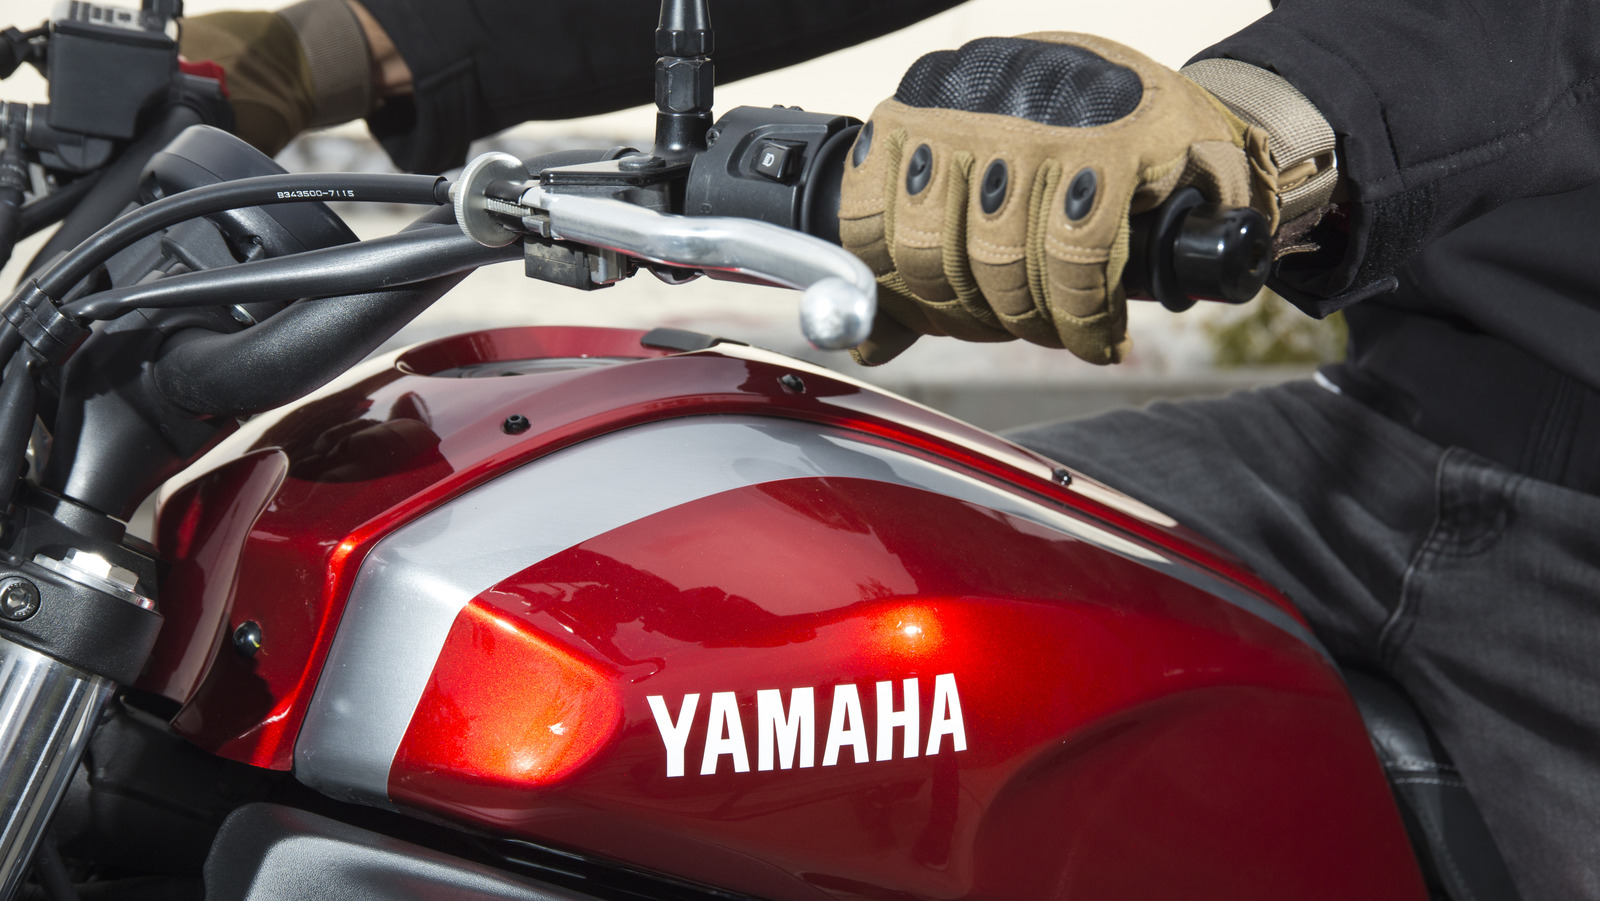 رتبه بندی ۵ تا از سریع ترین موتورسیکلت های یاماها که تا به حال ساخته شده است